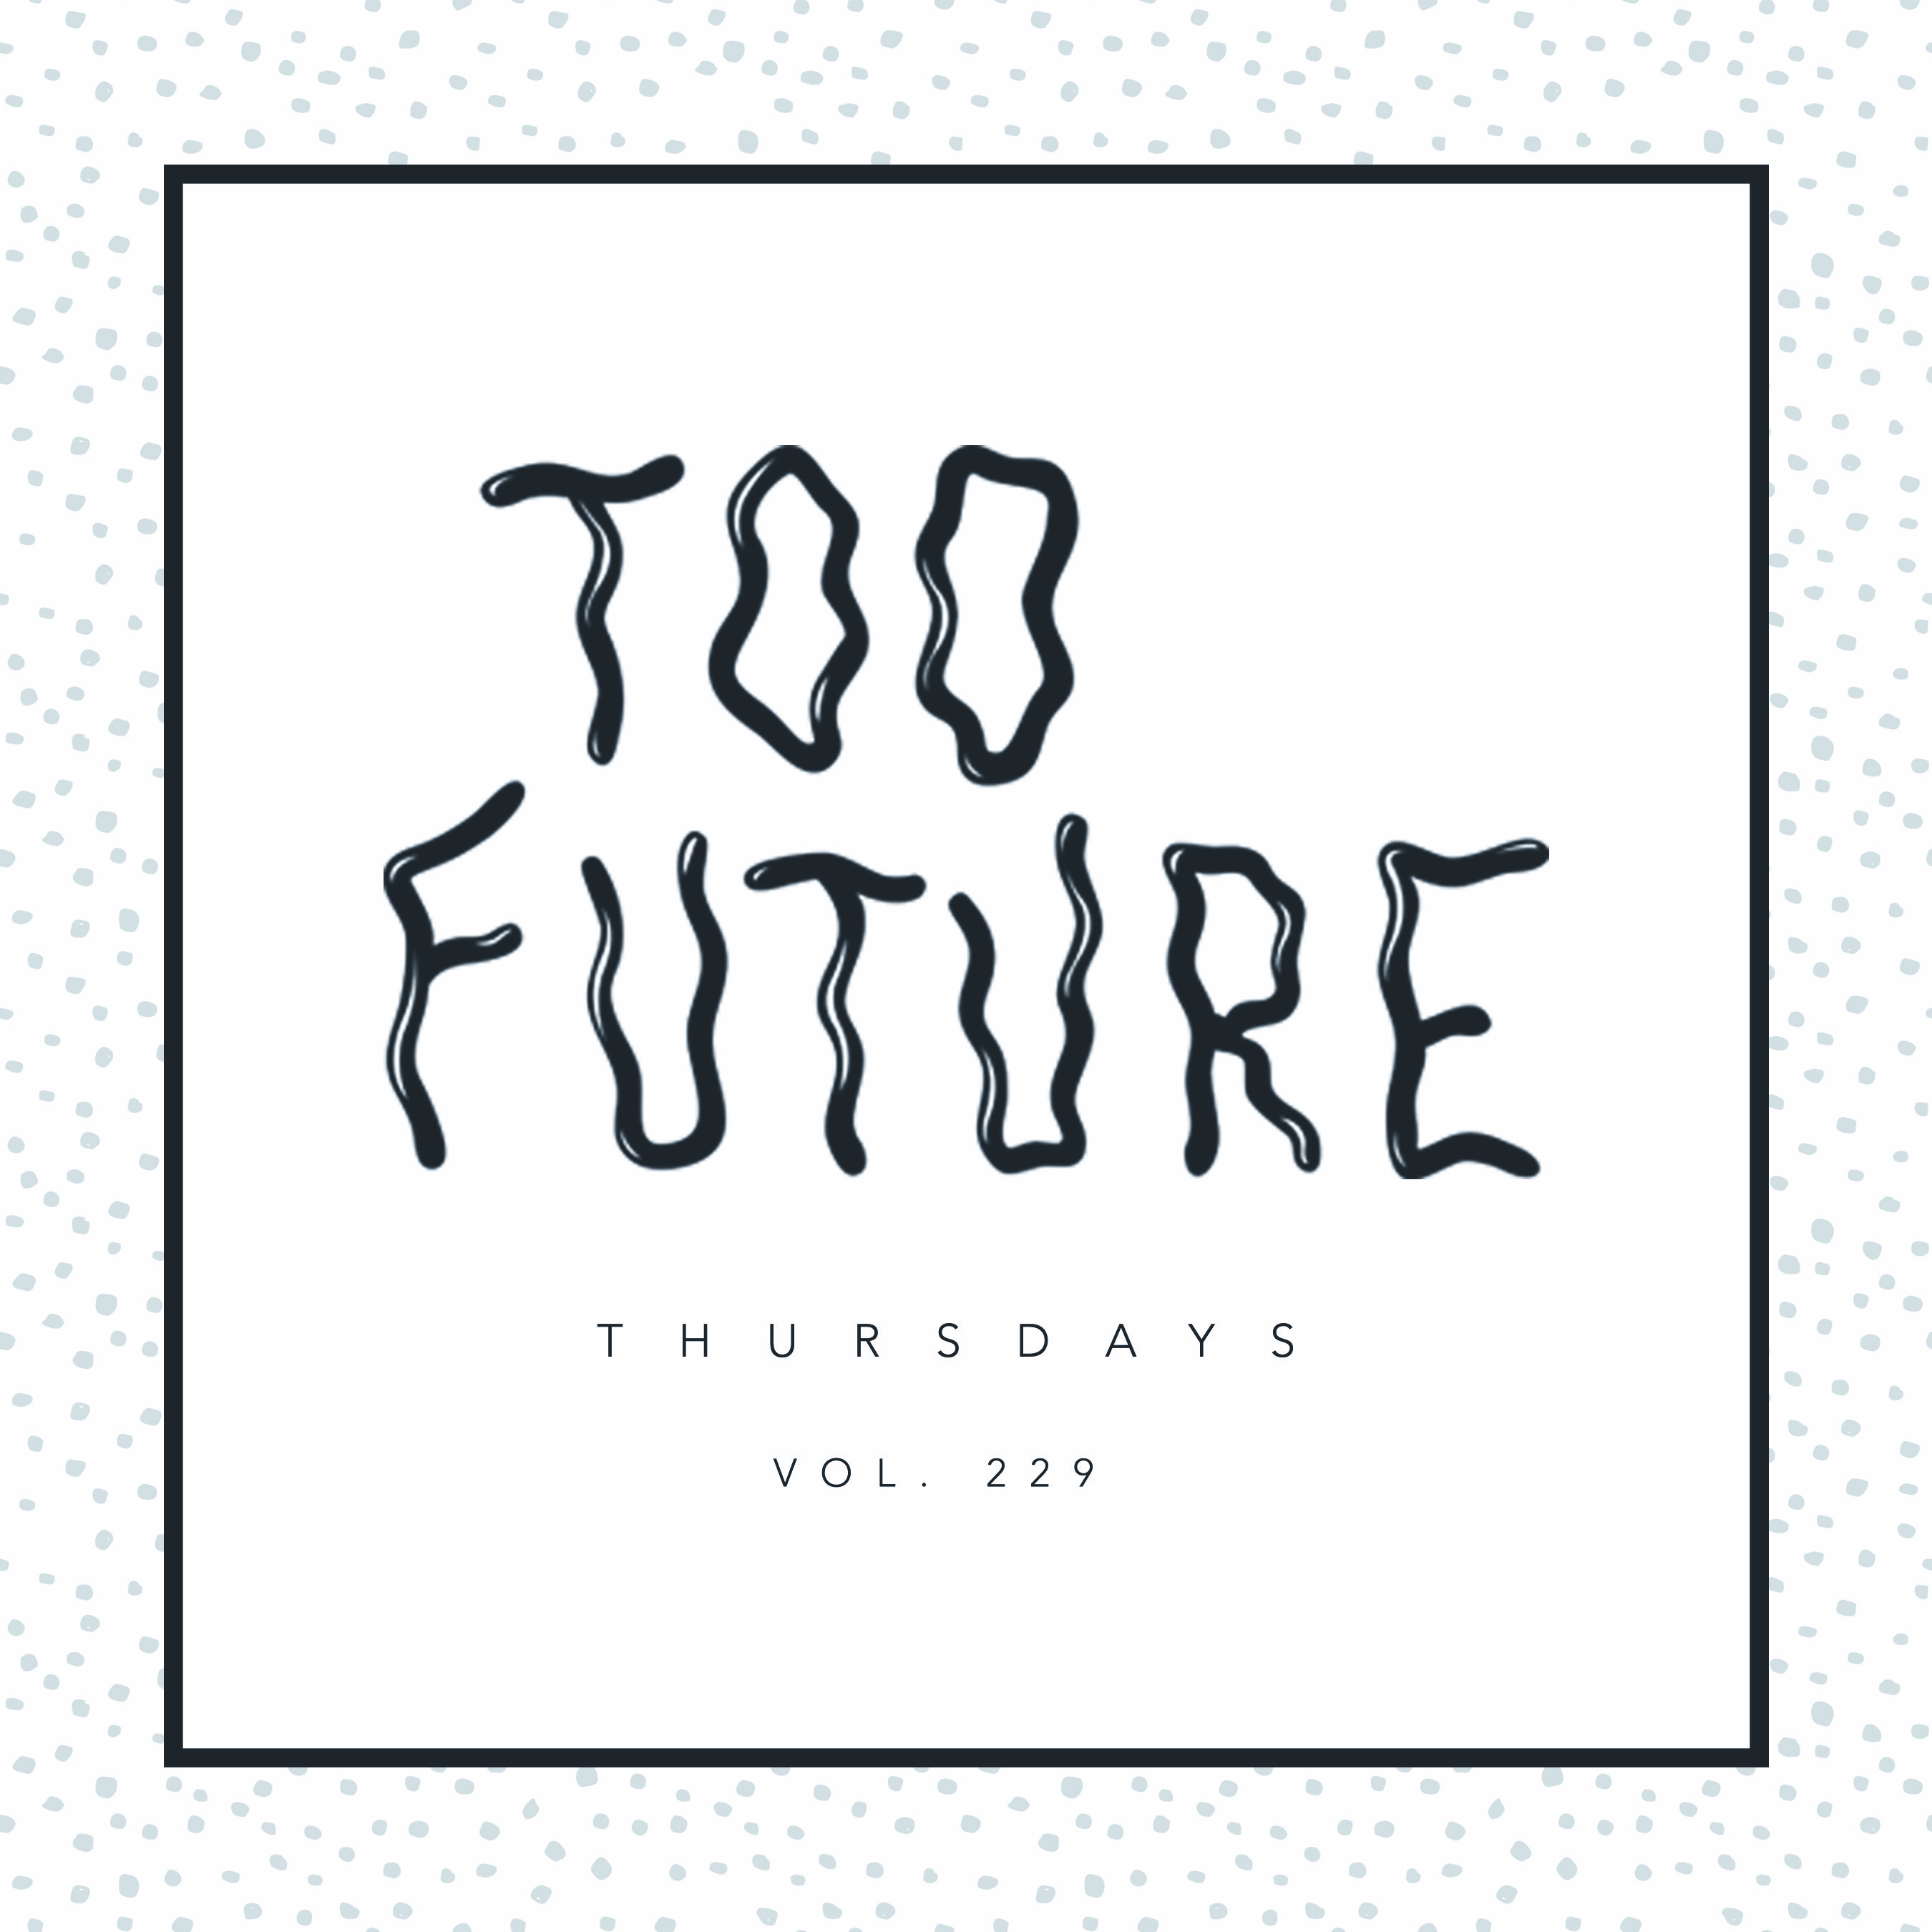 too-future-thursdays-vol-229